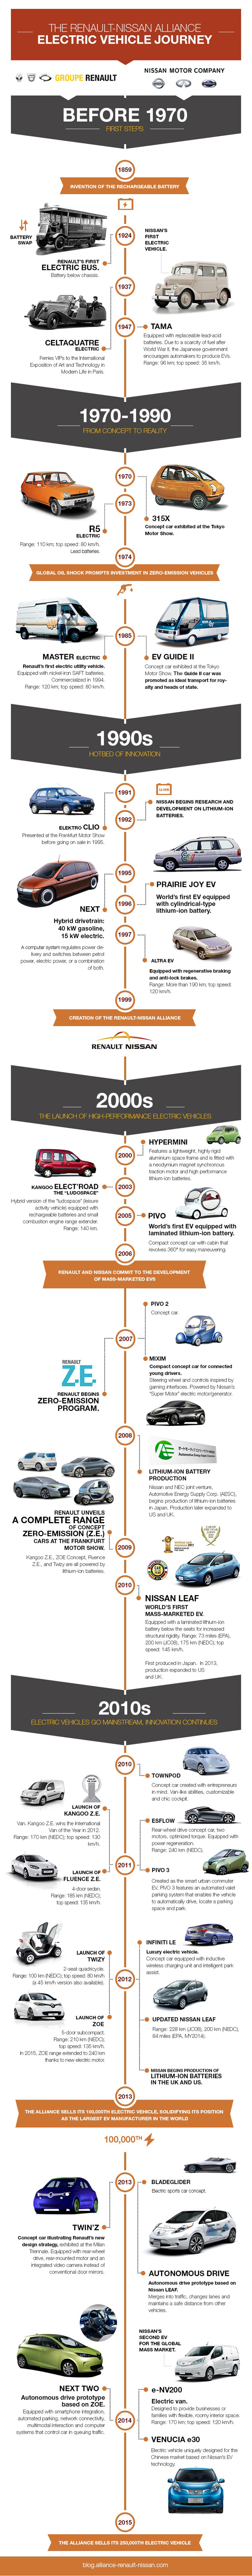 Reanault-Nissan: Hitos históricos del vehículo eléctrico